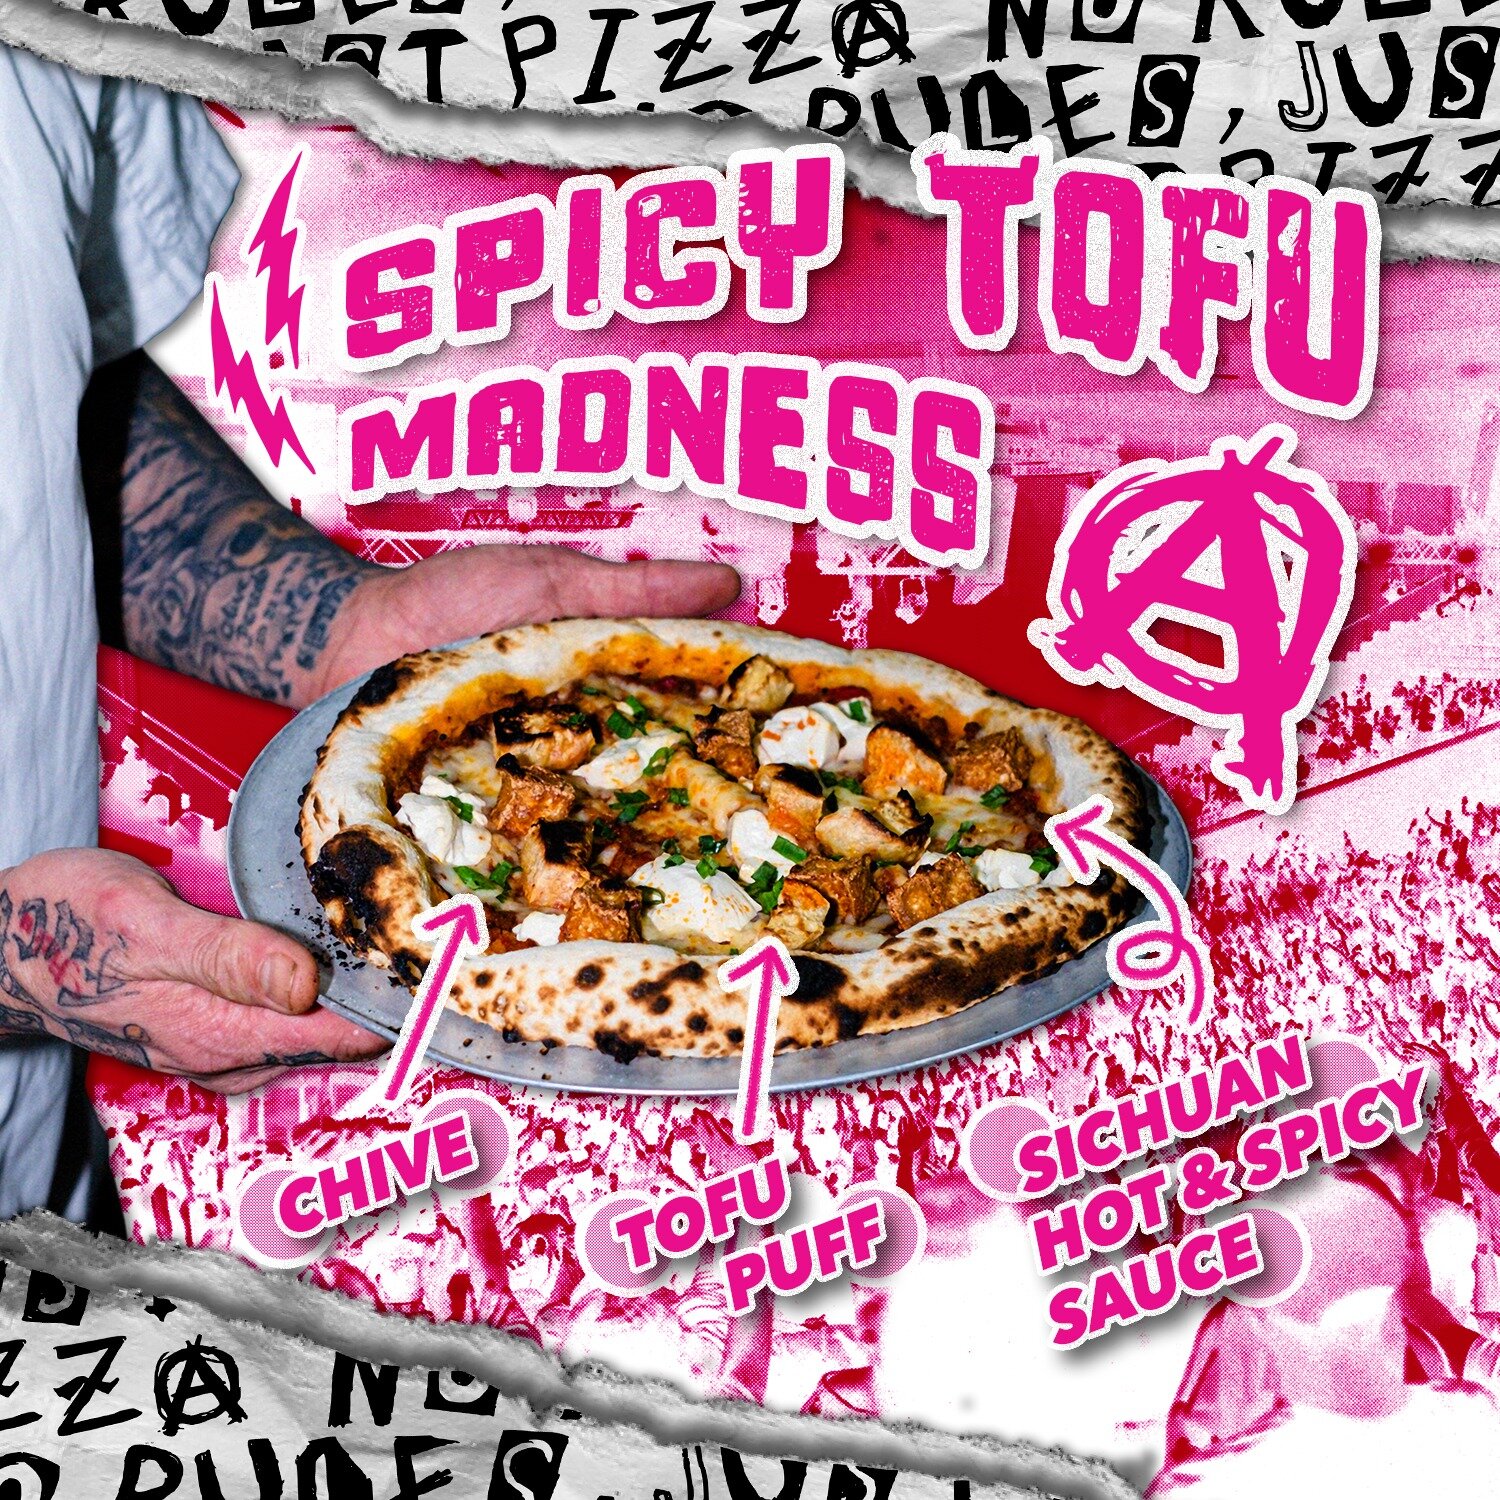 𝗦𝗣𝗜𝗖𝗬 𝗧𝗢𝗙𝗨 𝗠𝗔𝗗𝗡𝗘𝗦𝗦 豆腐食家之選
Sichuan Hot &amp; Spicy Sauce, Tofu Puff, Chive

Delivery and Random Pop-up Only.
Order at Foodpanda: https://www.foodpanda.hk/restaurant/ofaz/pizza-punk
.
.
.
.
.
#pizza #sourdough  #pizzalover #50toppizza #